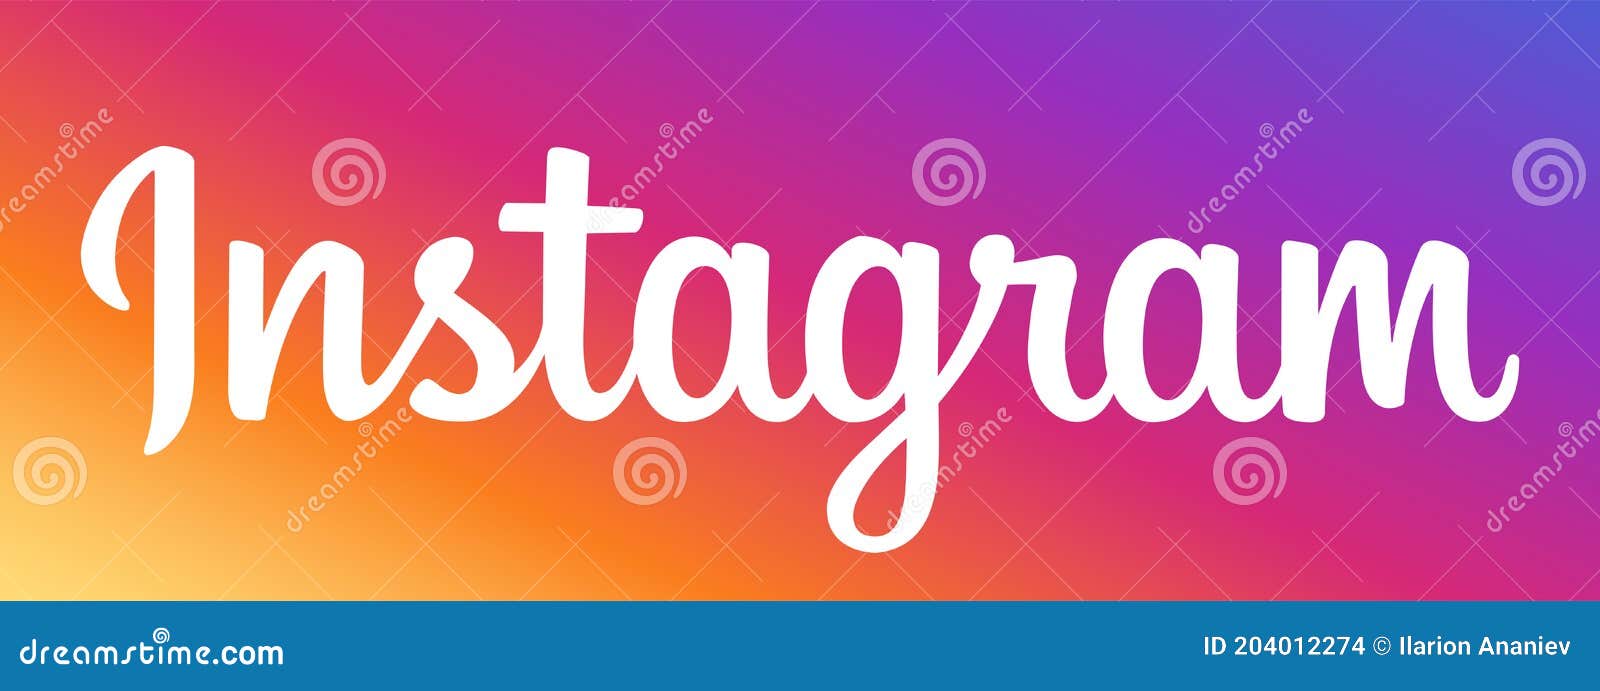 Với vector logo văn bản Instagram có chất lượng cao và font chữ gradient màu sắc cực kỳ tinh tế, bạn hoàn toàn có thể tạo ra những bài đăng quảng cáo đẹp mắt và chuyên nghiệp. Kiểu font chữ này thể hiện đầy đủ tính cách và cá tính của bạn và giúp bạn thu hút được một lượng lớn khách hàng trên mạng xã hội.